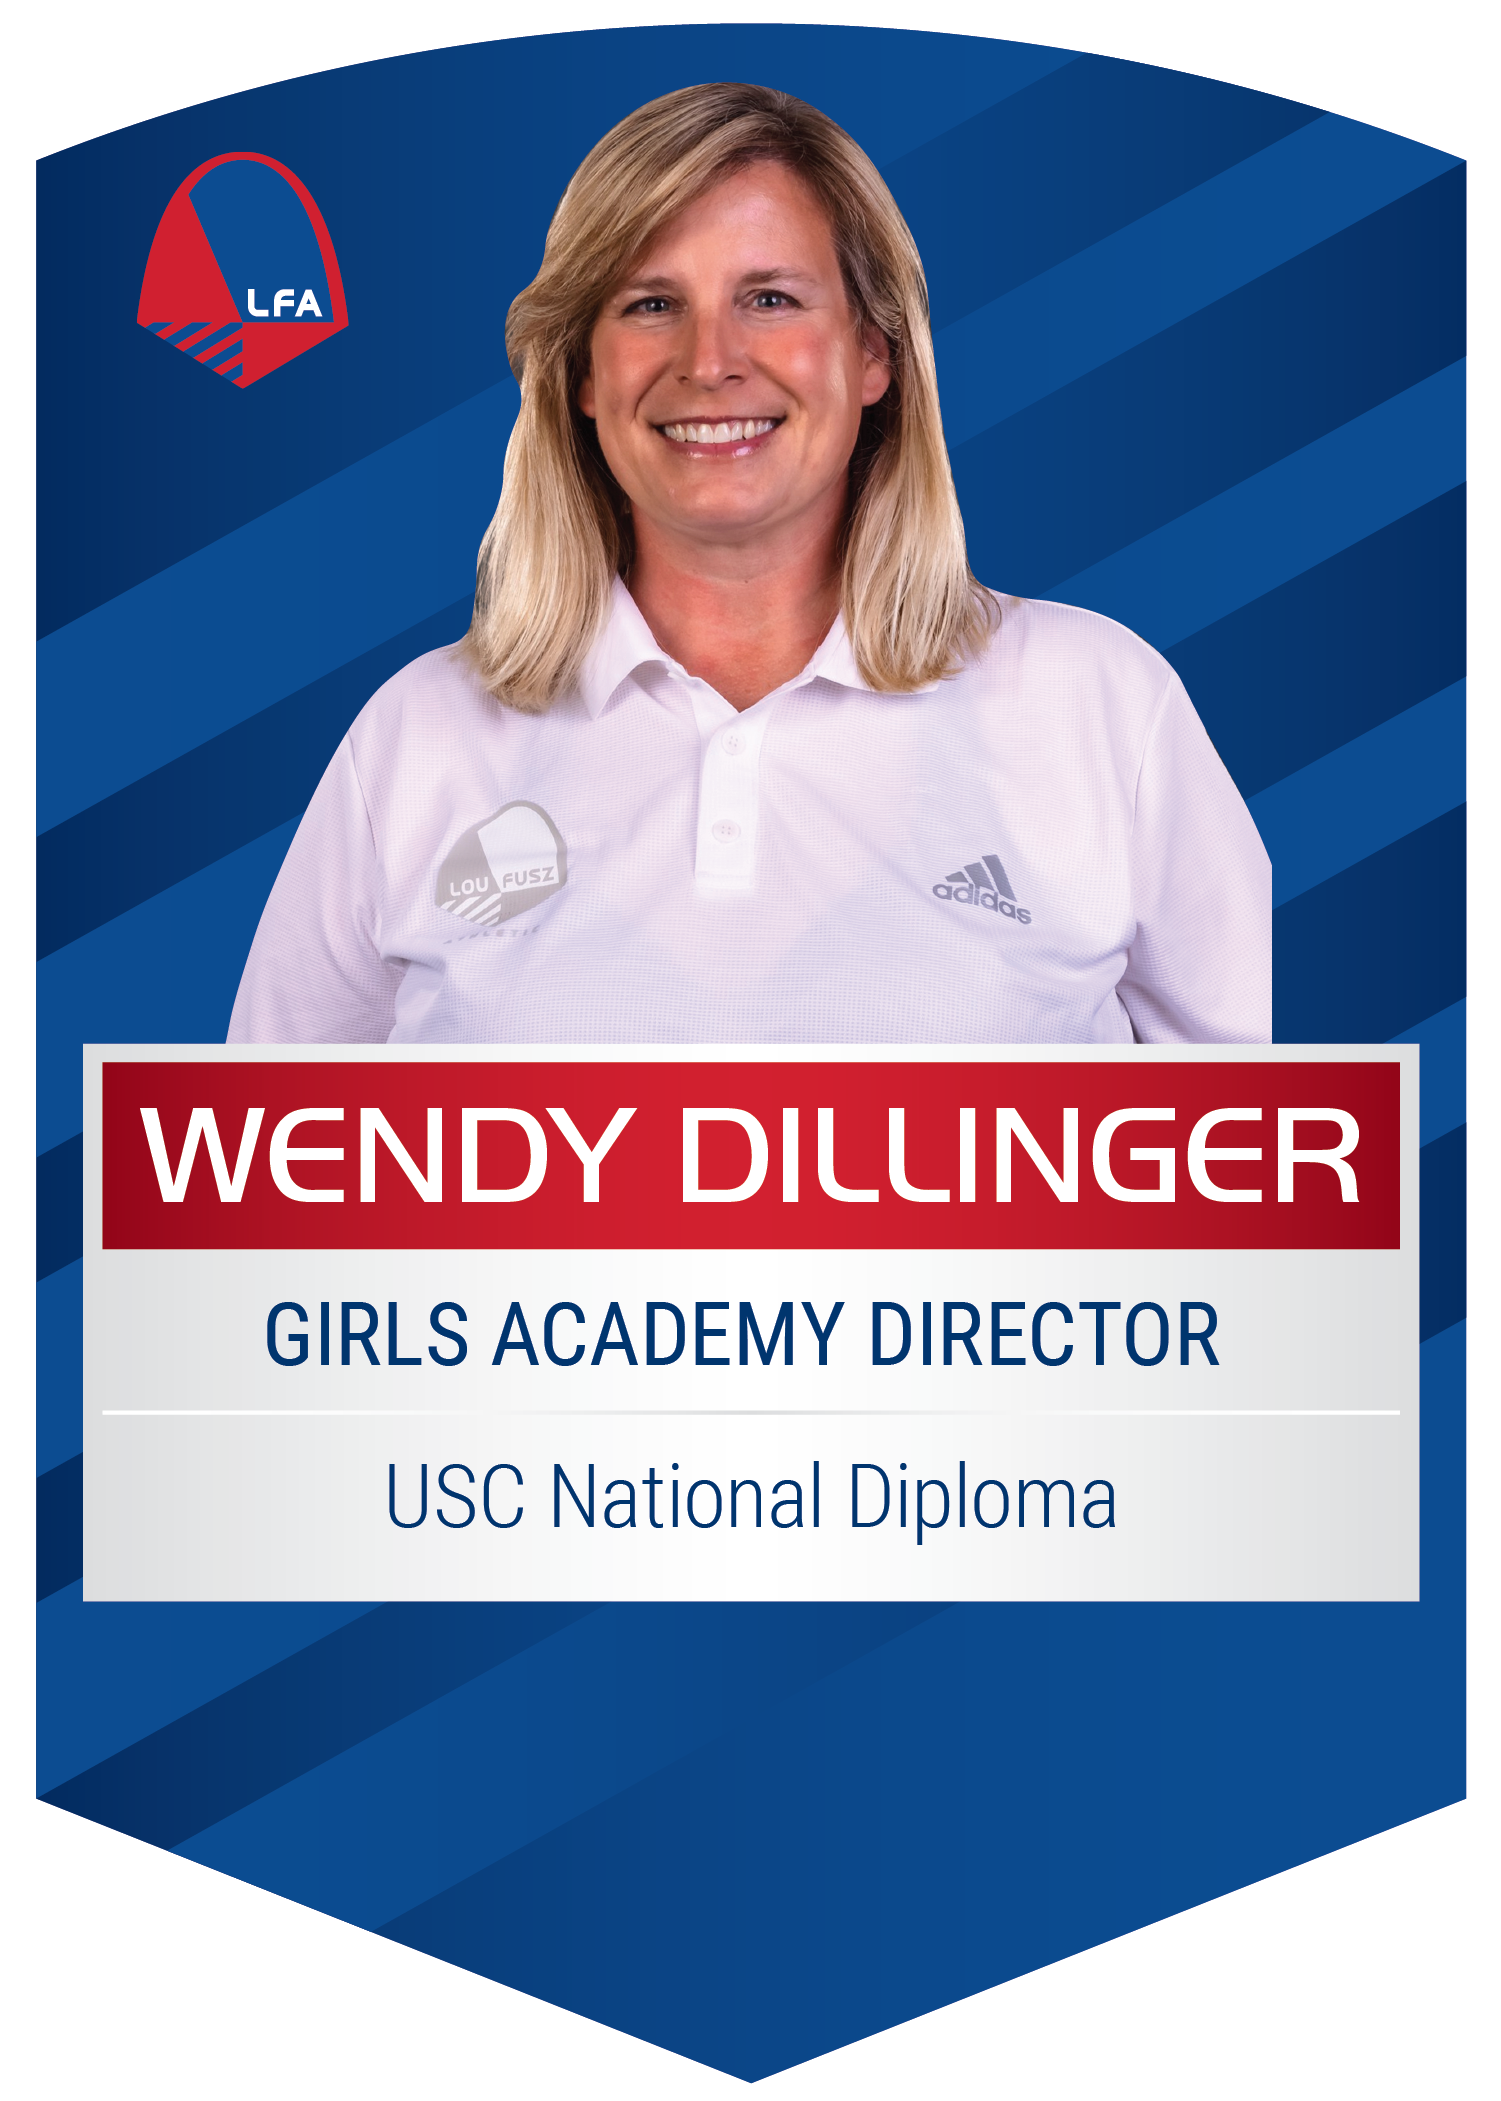 Wendy Dillinger